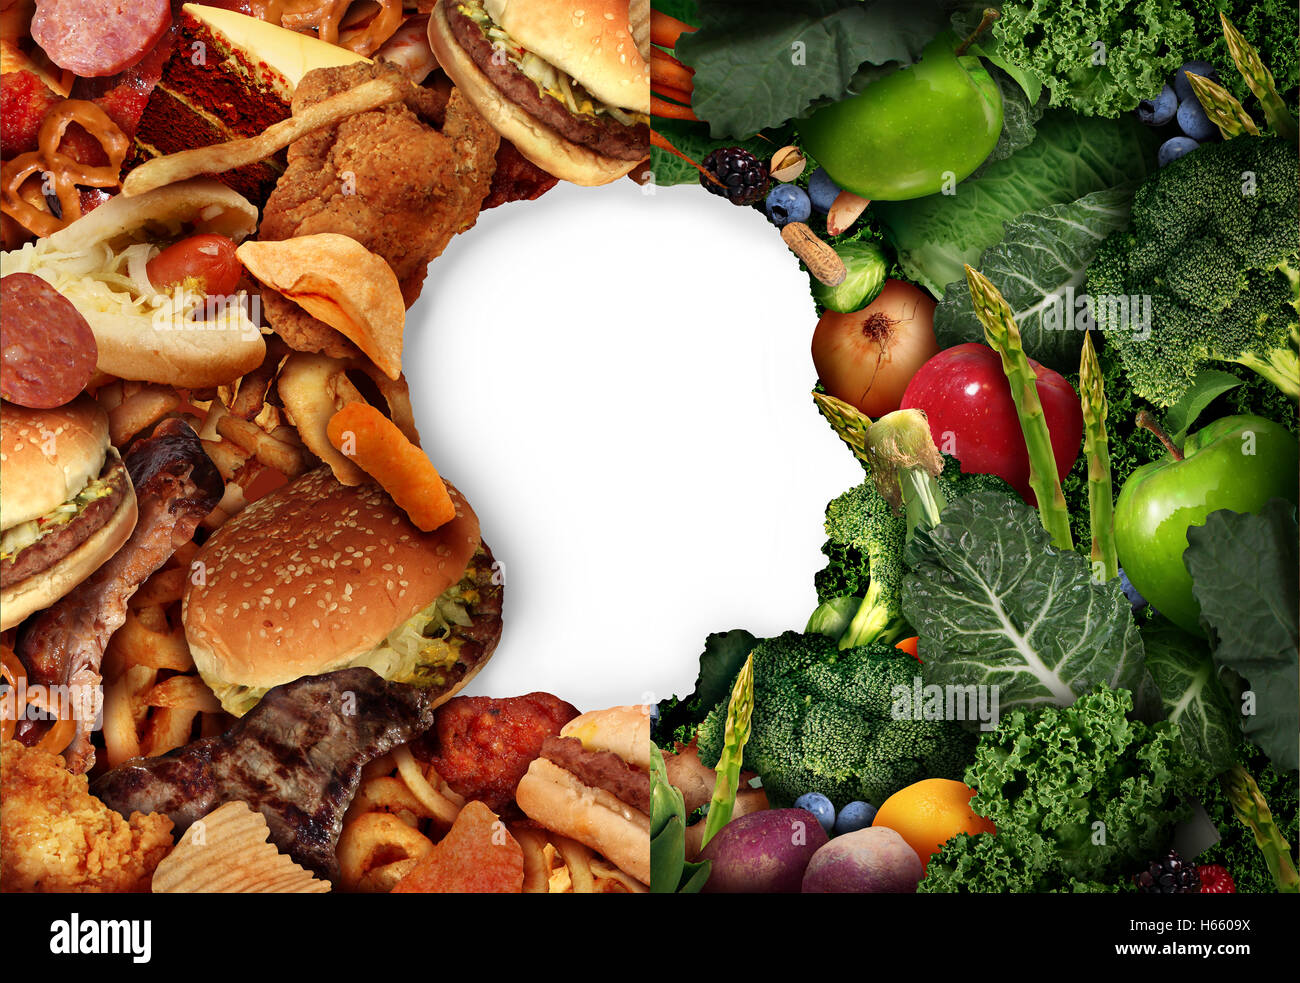 Diät essen Wahl als einen menschlichen Kopf in einem Lebensmittel-Hintergrund mit halben fettigen Junk-Food und die andere Seite mit grünen gesundes Obst und Gemüse als Symbol für eine Dietition oder einen Ernährungsberater Gesundheit und Ernährung Lebensstil Wahl. Stockfoto